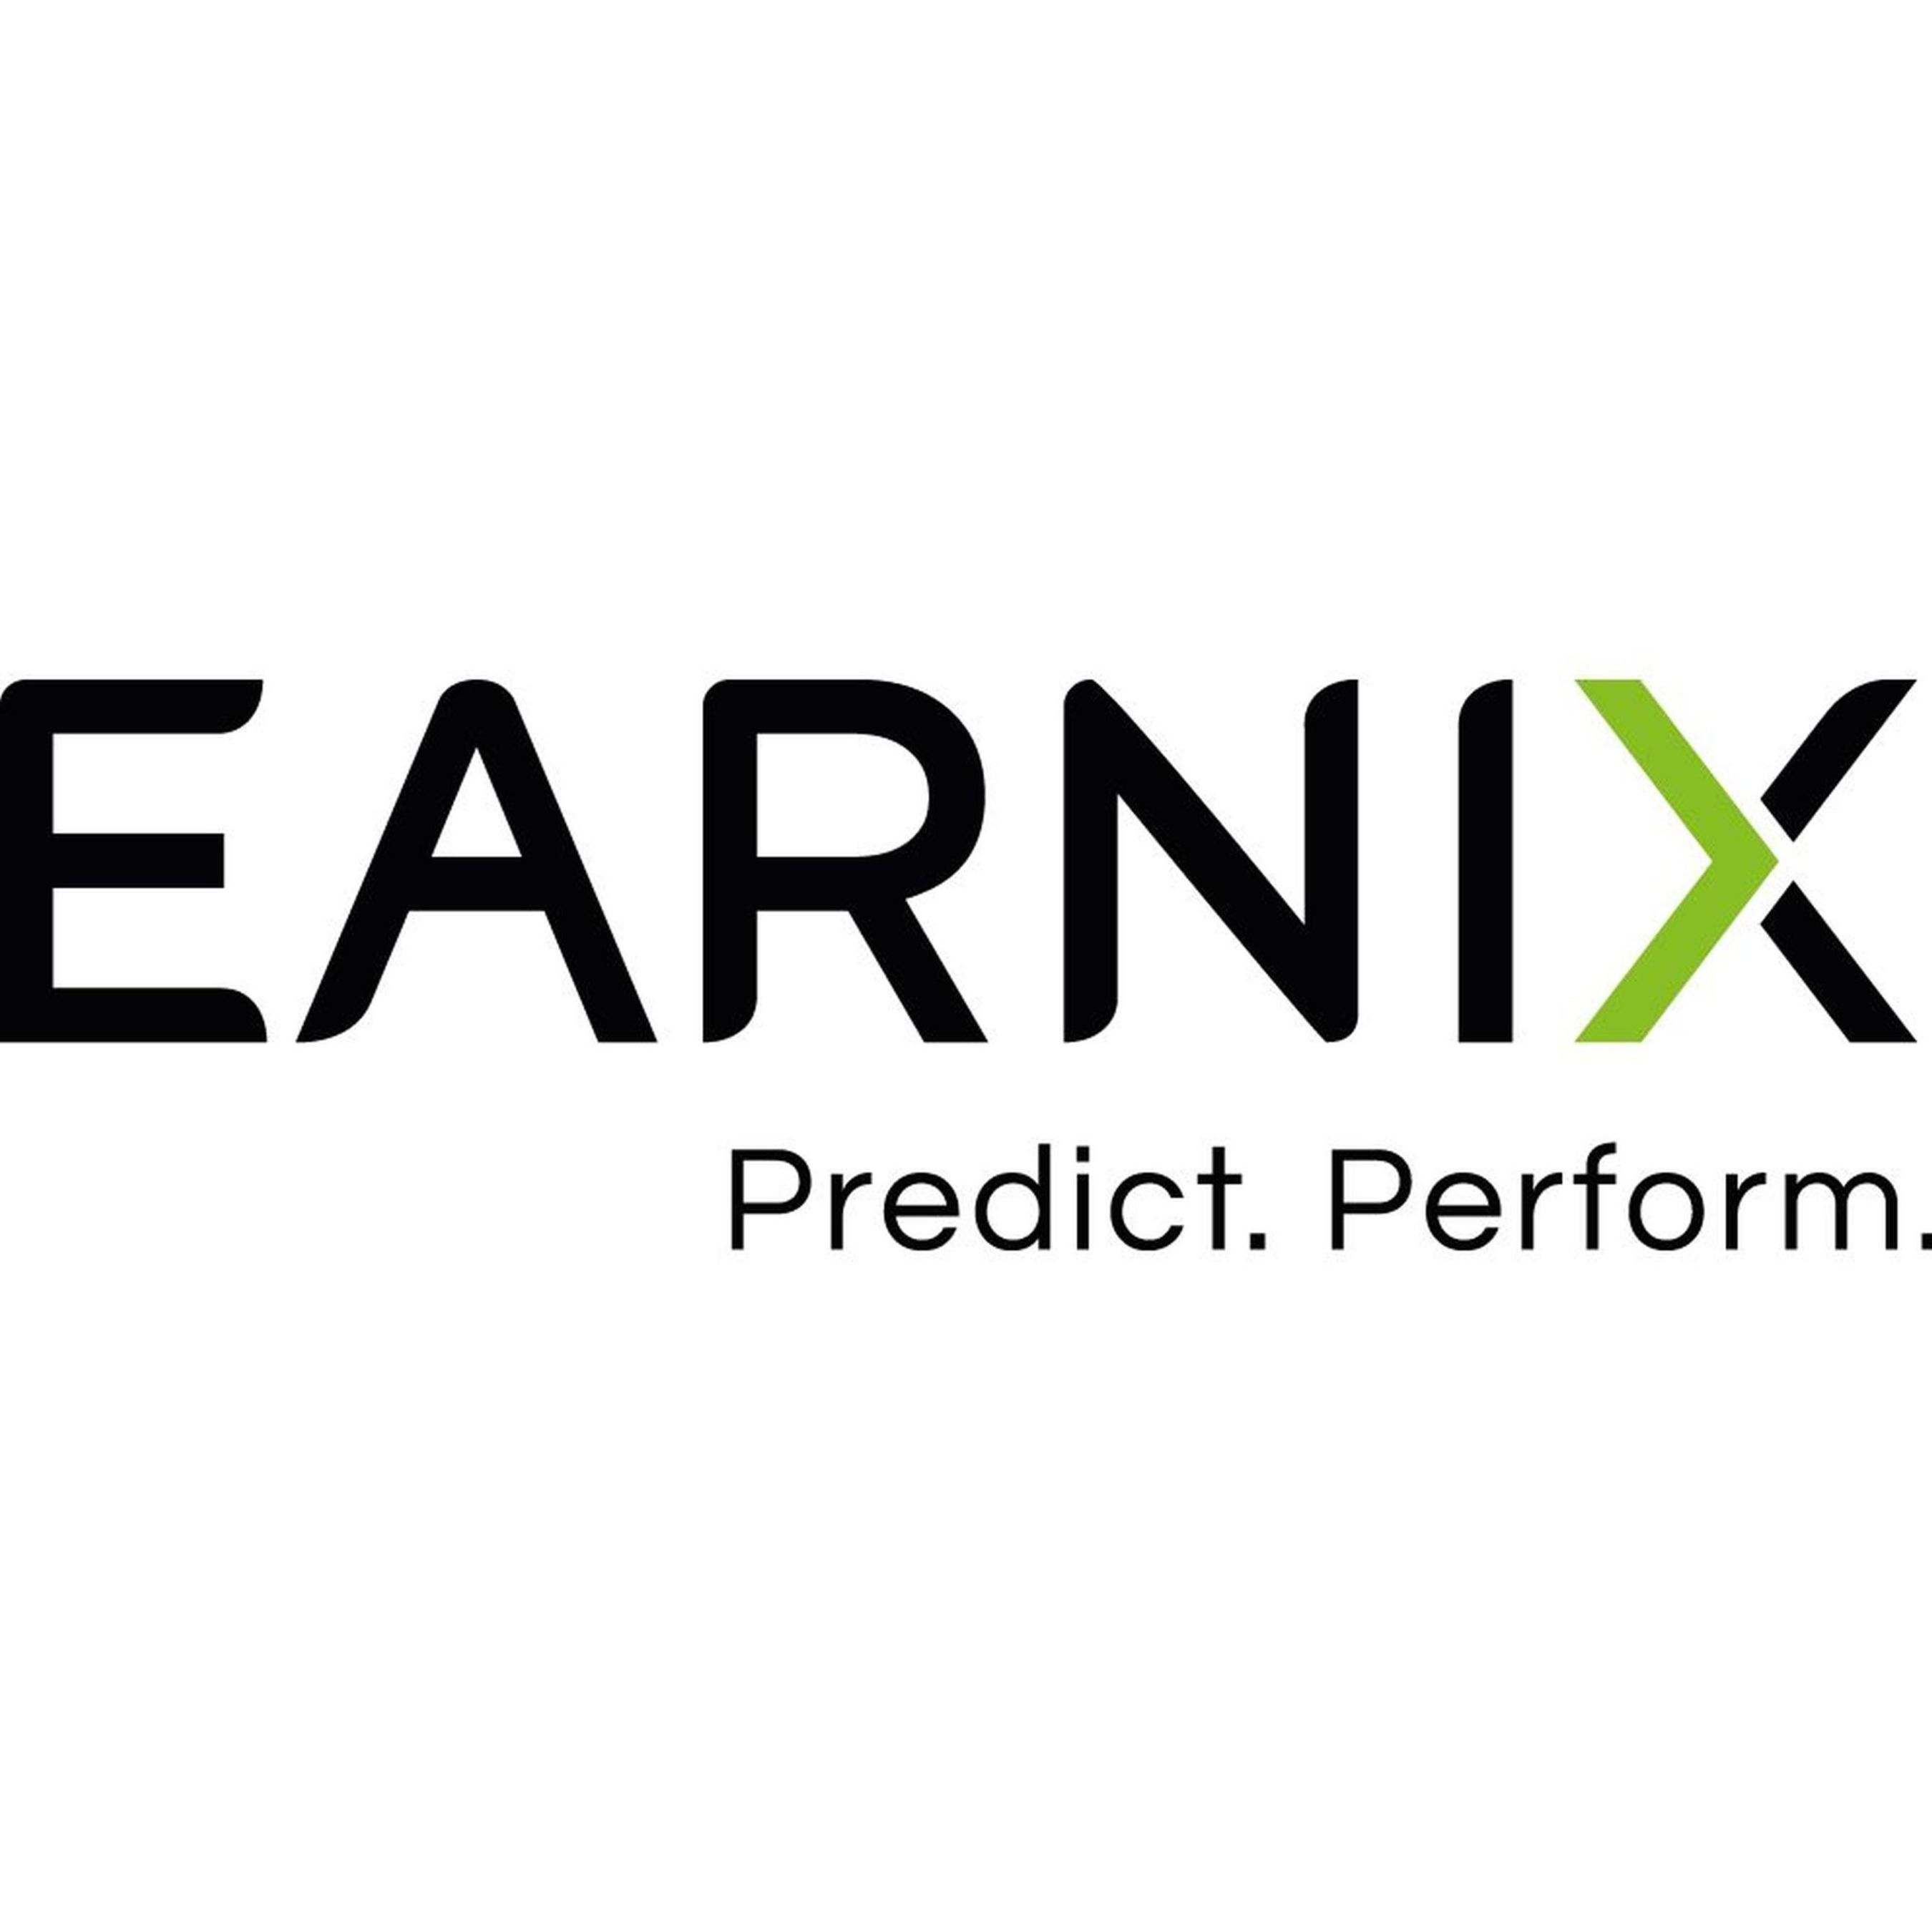 Earnix Logo (PRNewsFoto/Earnix) (PRNewsFoto/Earnix)